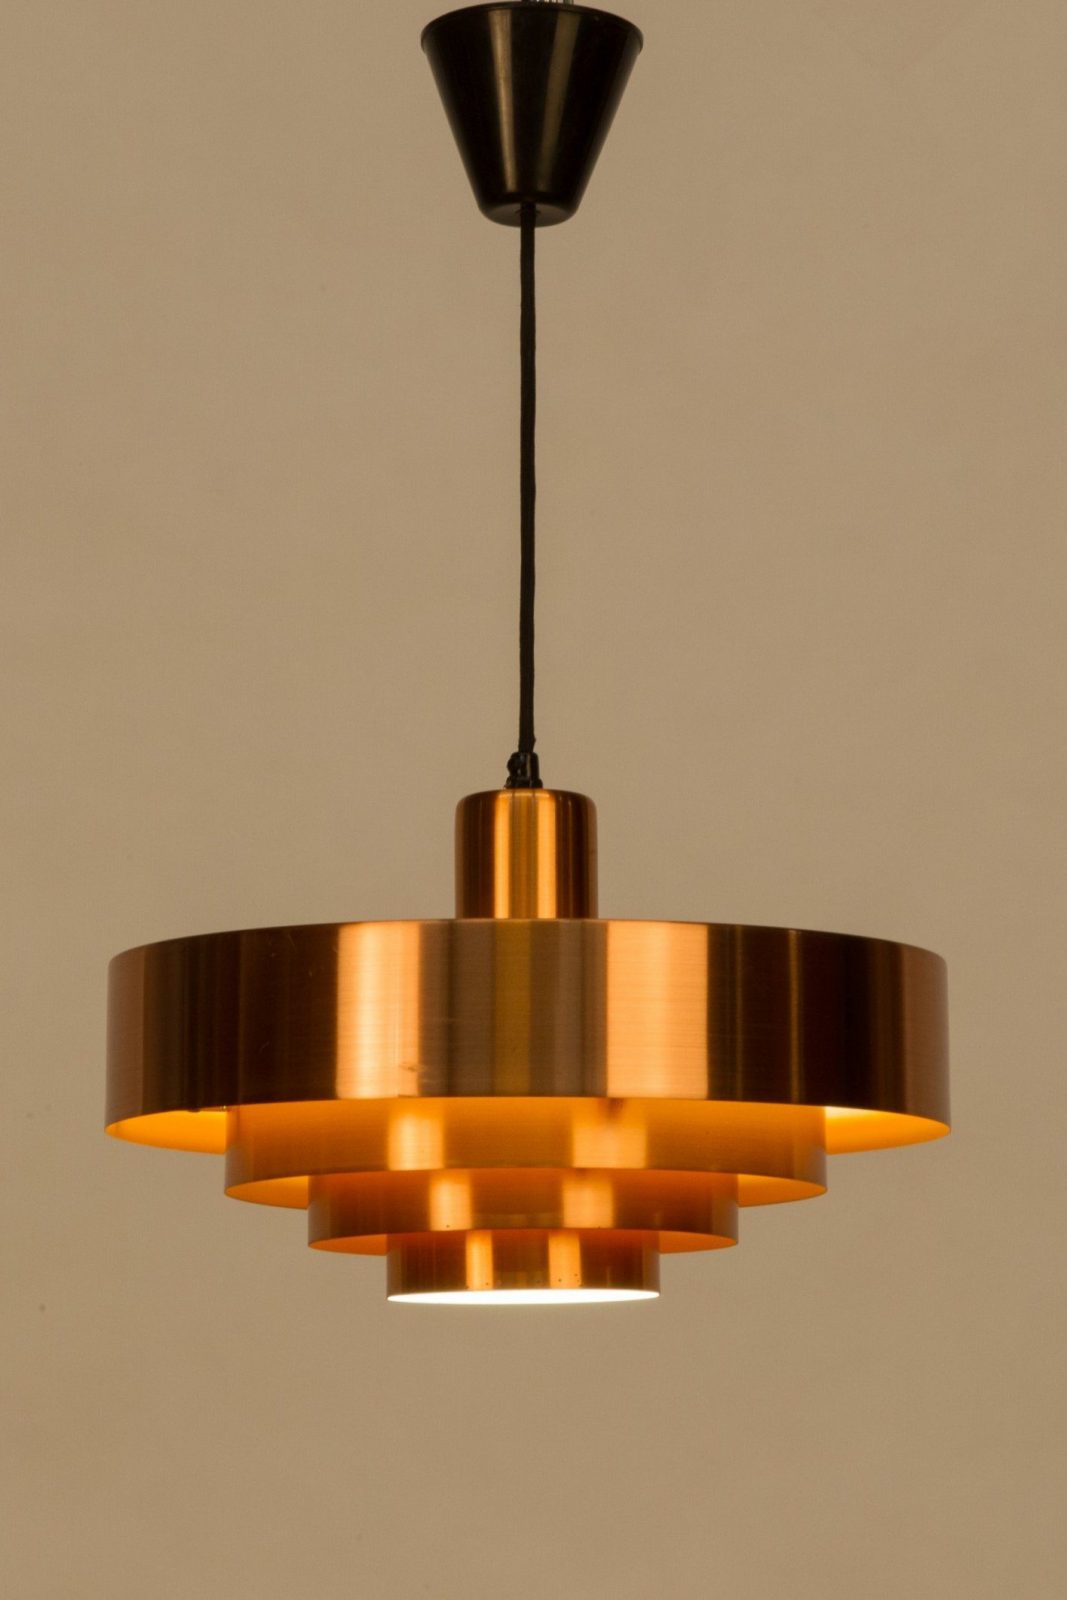 Lampe Kupfer Amazing Architektur Mehr Als Lampe Kupfer Kupferrohr von Ikea Lampe Schwarz Kupfer Bild